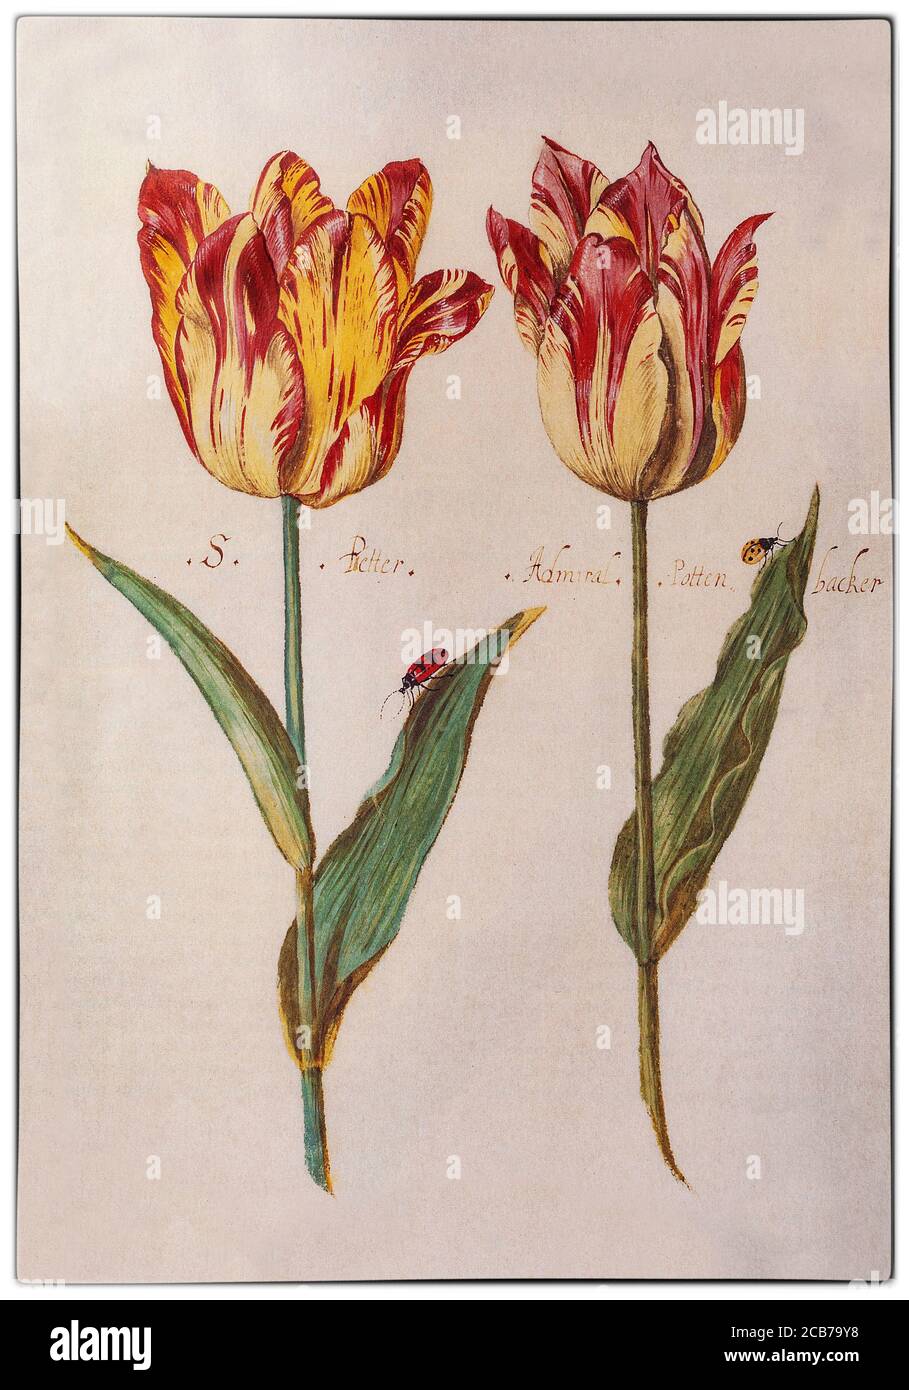 Des tulipes brisées peintes par Jacob Marrel (1613/14-1681), un peintre allemand de la vie encore actif à Utrecht pendant la Tulip mania dans l'âge d'or néerlandais au cours duquel les prix contractuels de certaines bulbes de la tulipe récemment introduite et à la mode ont atteint des niveaux extraordinairement élevés et ont ensuite considérablement chuté. Les tulipes « brisées » ont une infection virale, qui a causé l'apparition de belles et saisissantes bandes de couleur dans les pétales, remarquées par le botaniste flamand Carolus Clusius, père de l'obsession hollandaise des tulipes, aux pays-Bas dans les années 1600. Banque D'Images